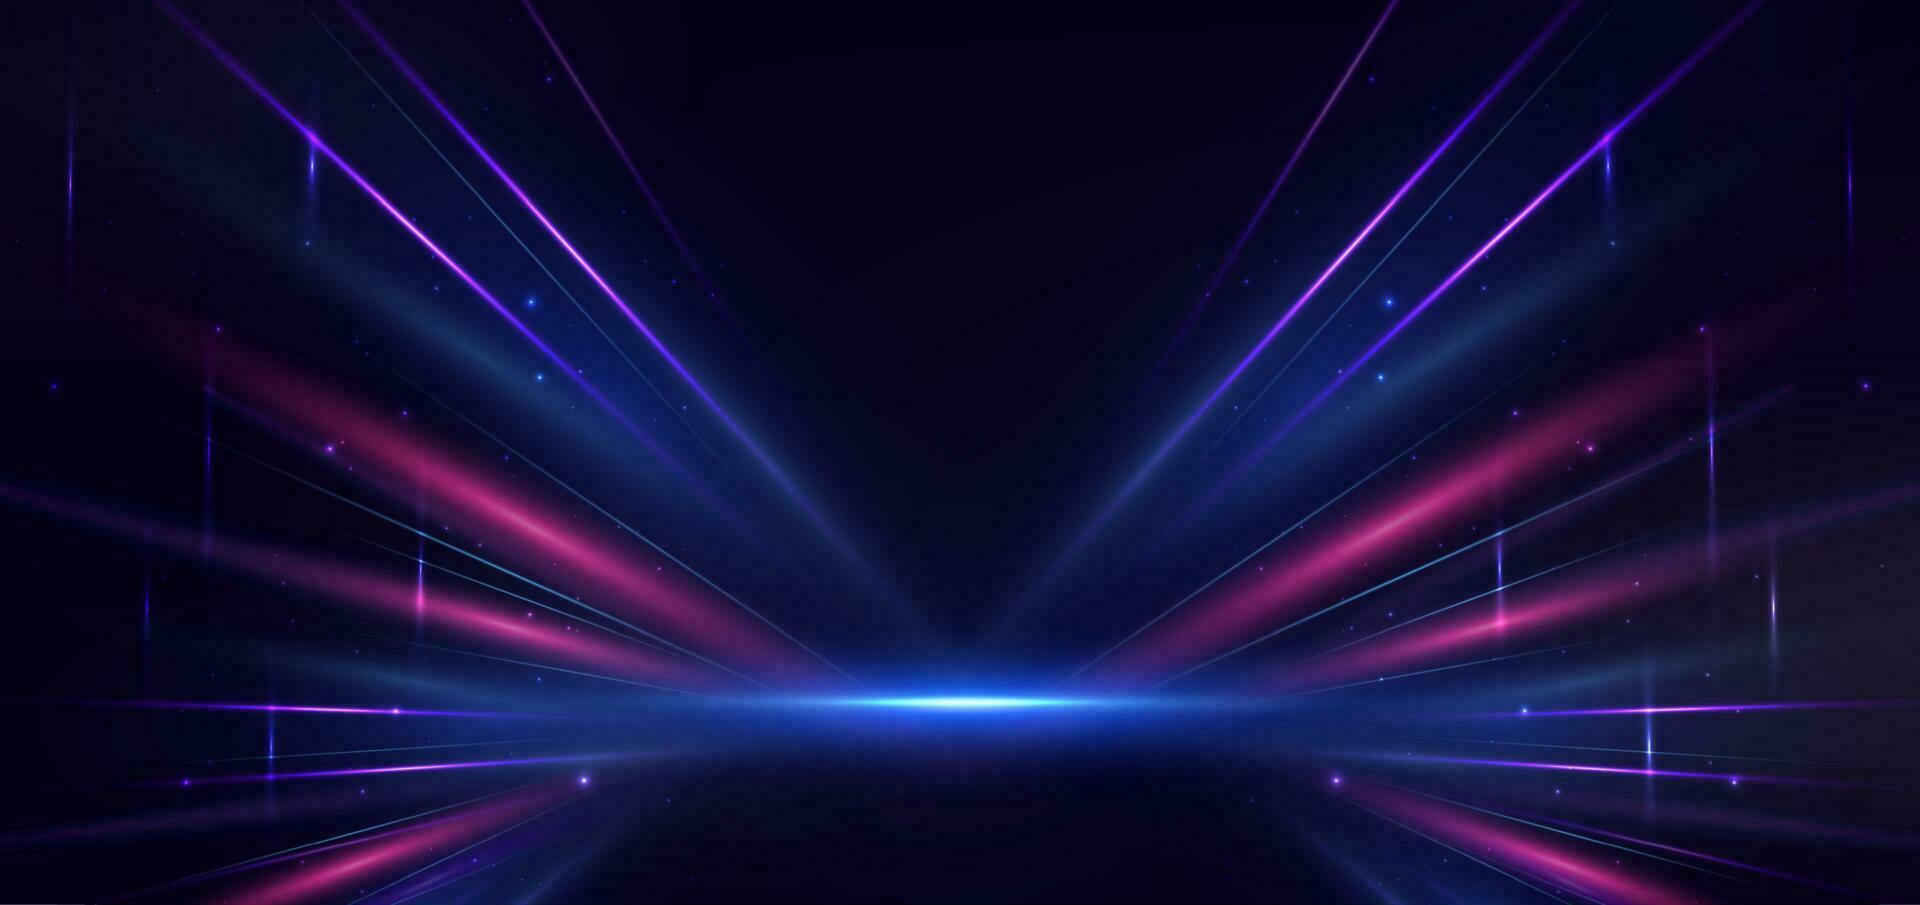 tecnologia abstrata futurista linhas de luz azuis e vermelhas brilhantes com efeito de desfoque de movimento de velocidade em fundo azul escuro. vetor